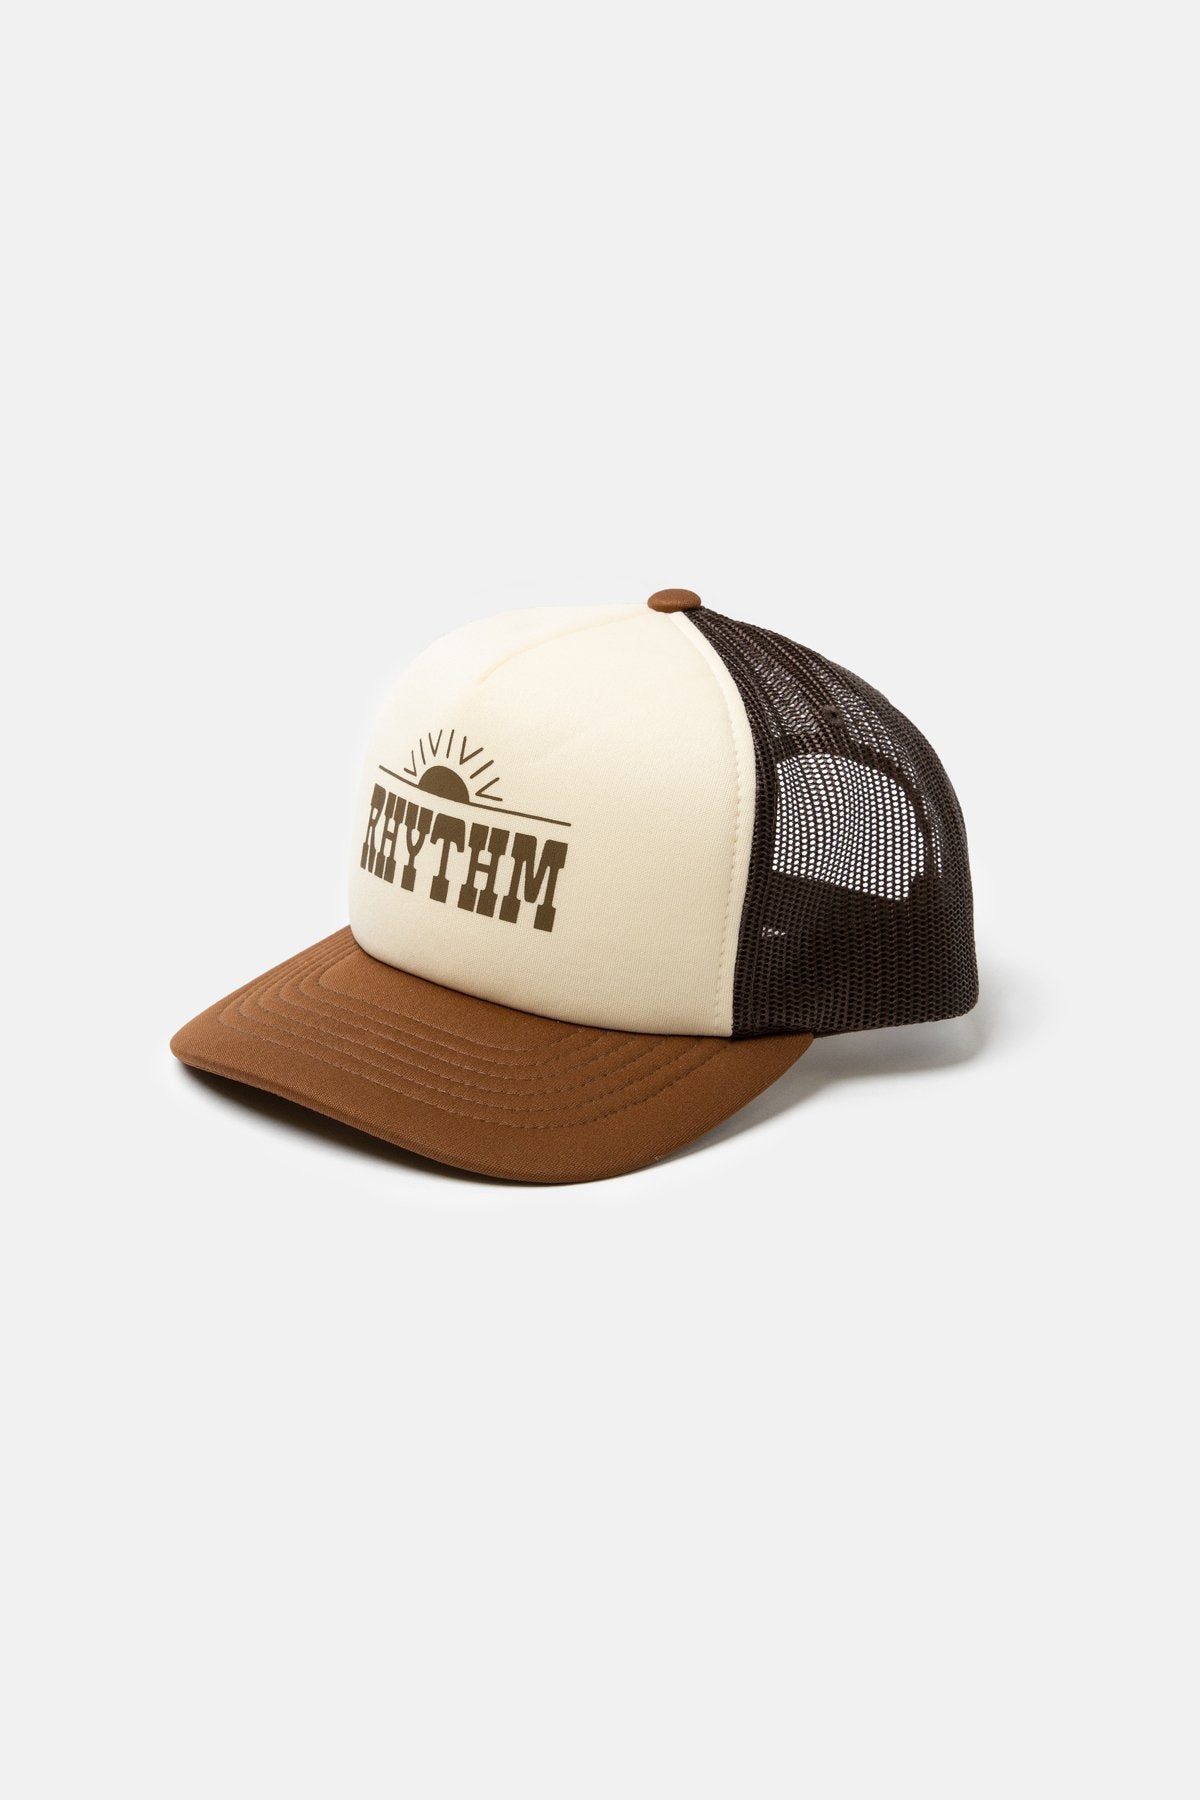 Rhythm Western Trucker Cap Brown